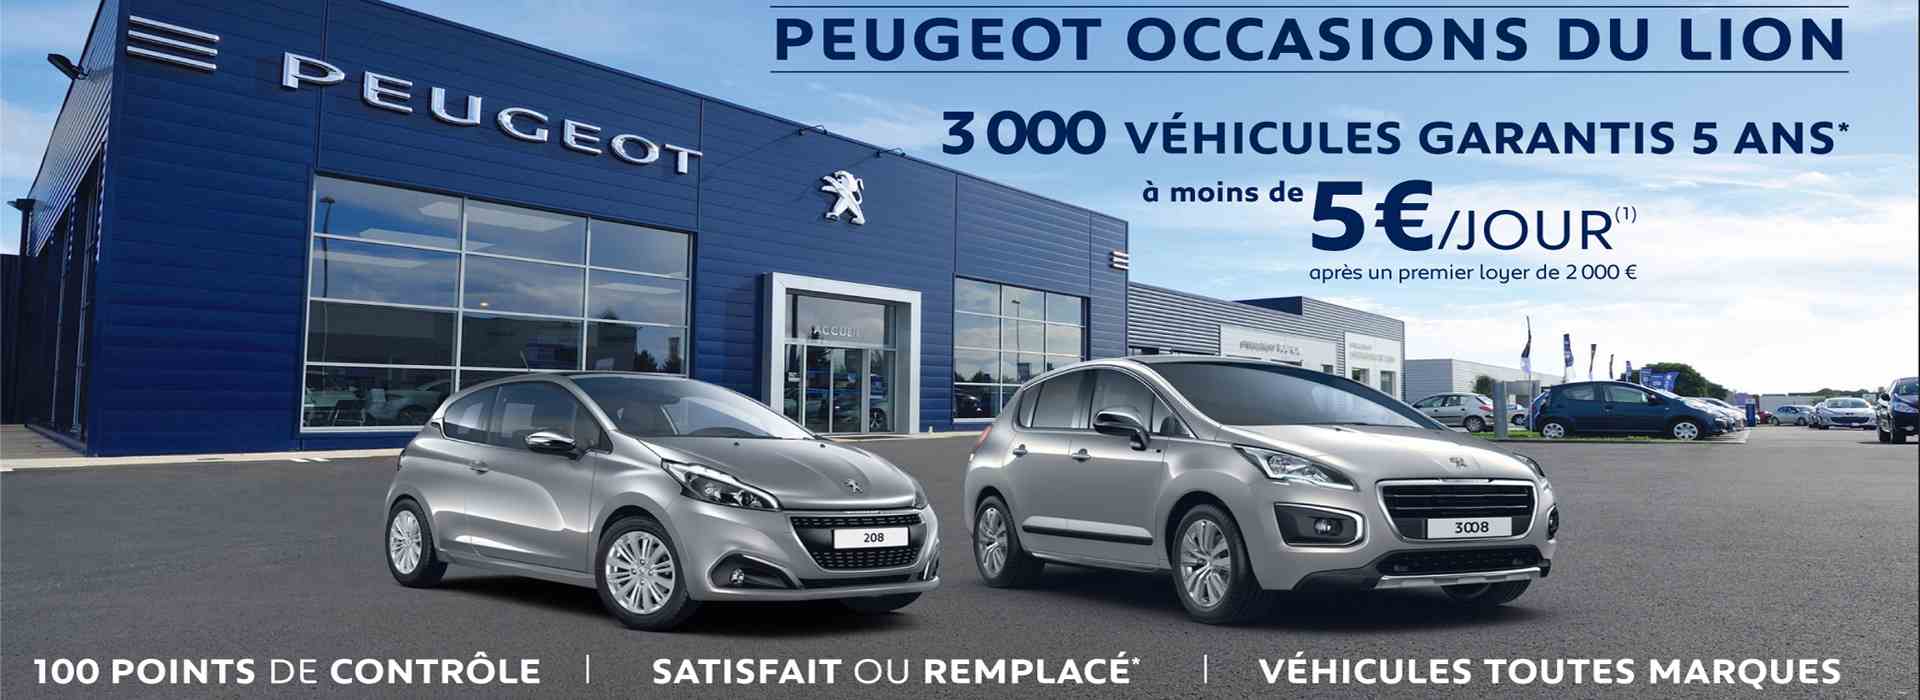 Offre Peugeot Occasions du Lion